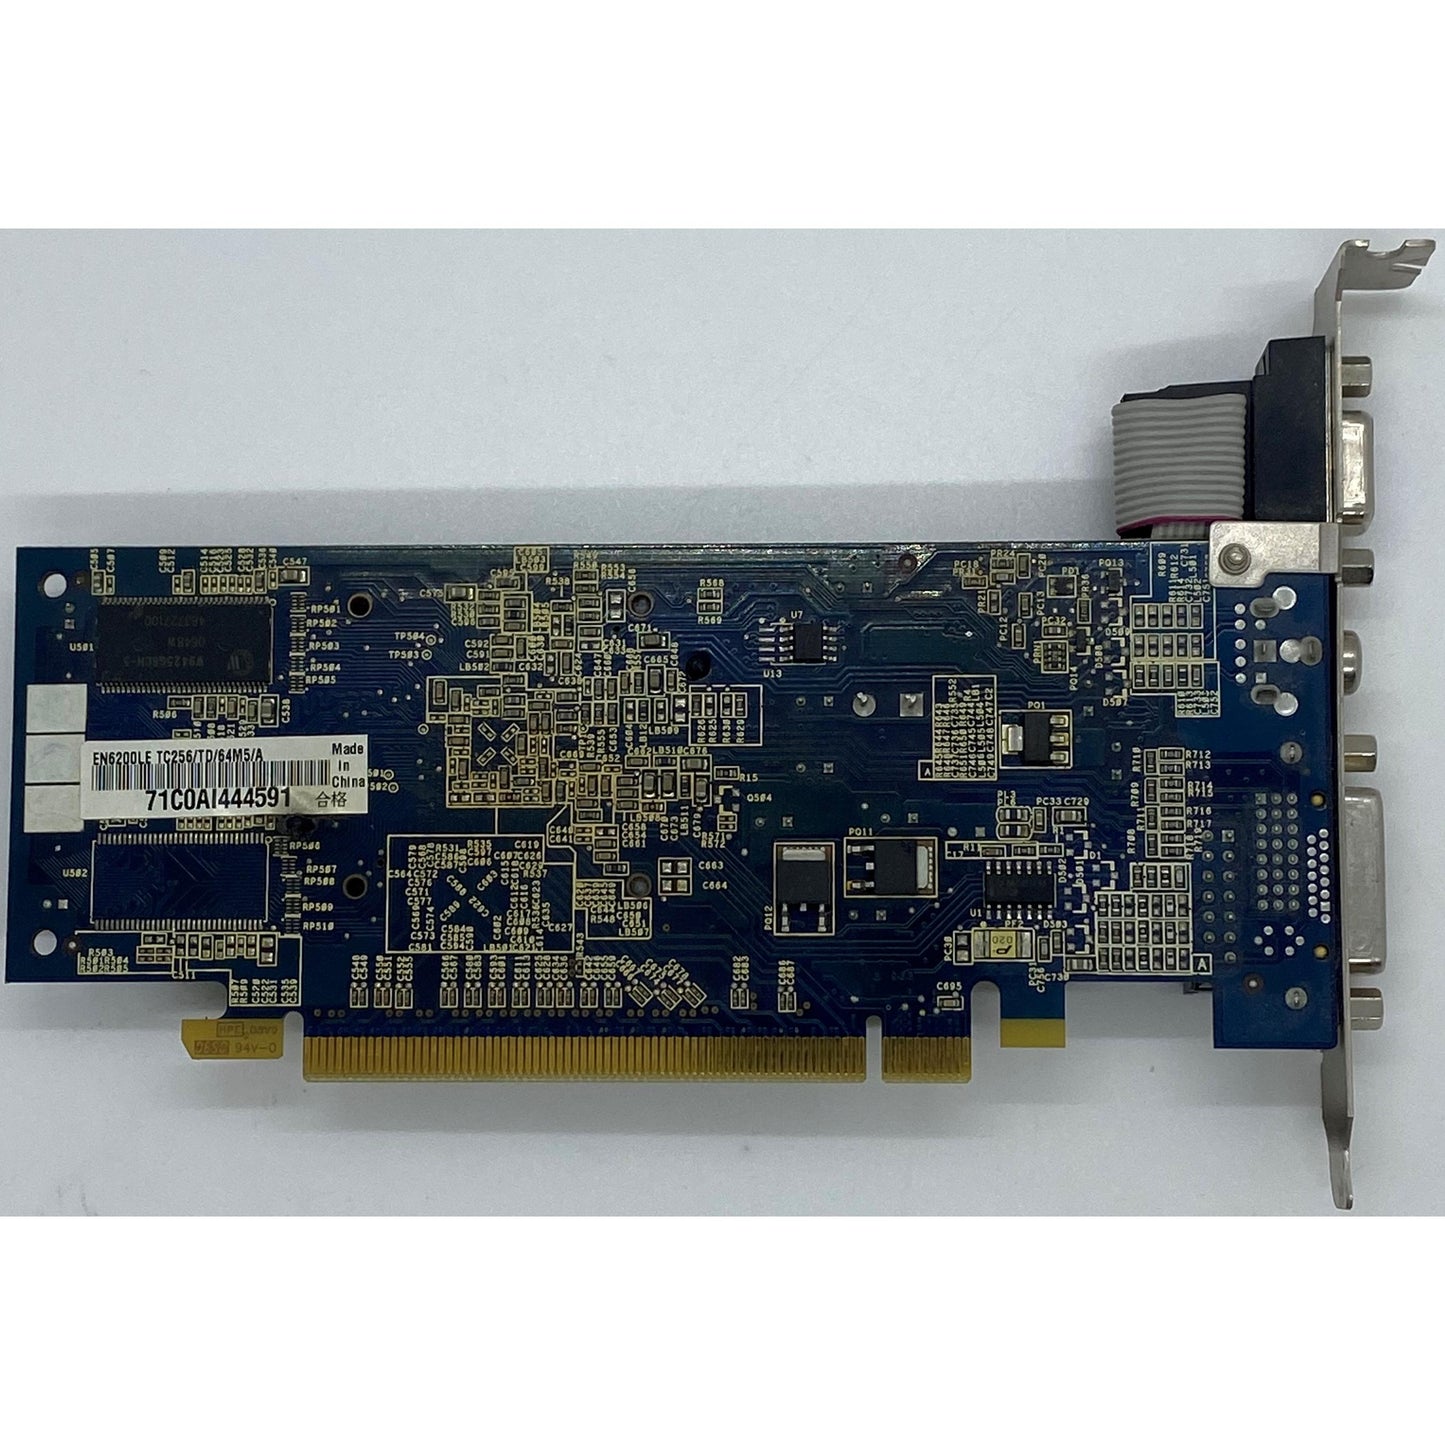 ASUS EN6200LE TC256/TD/64M5/A | 256MB DDR | VGA COMP DVI